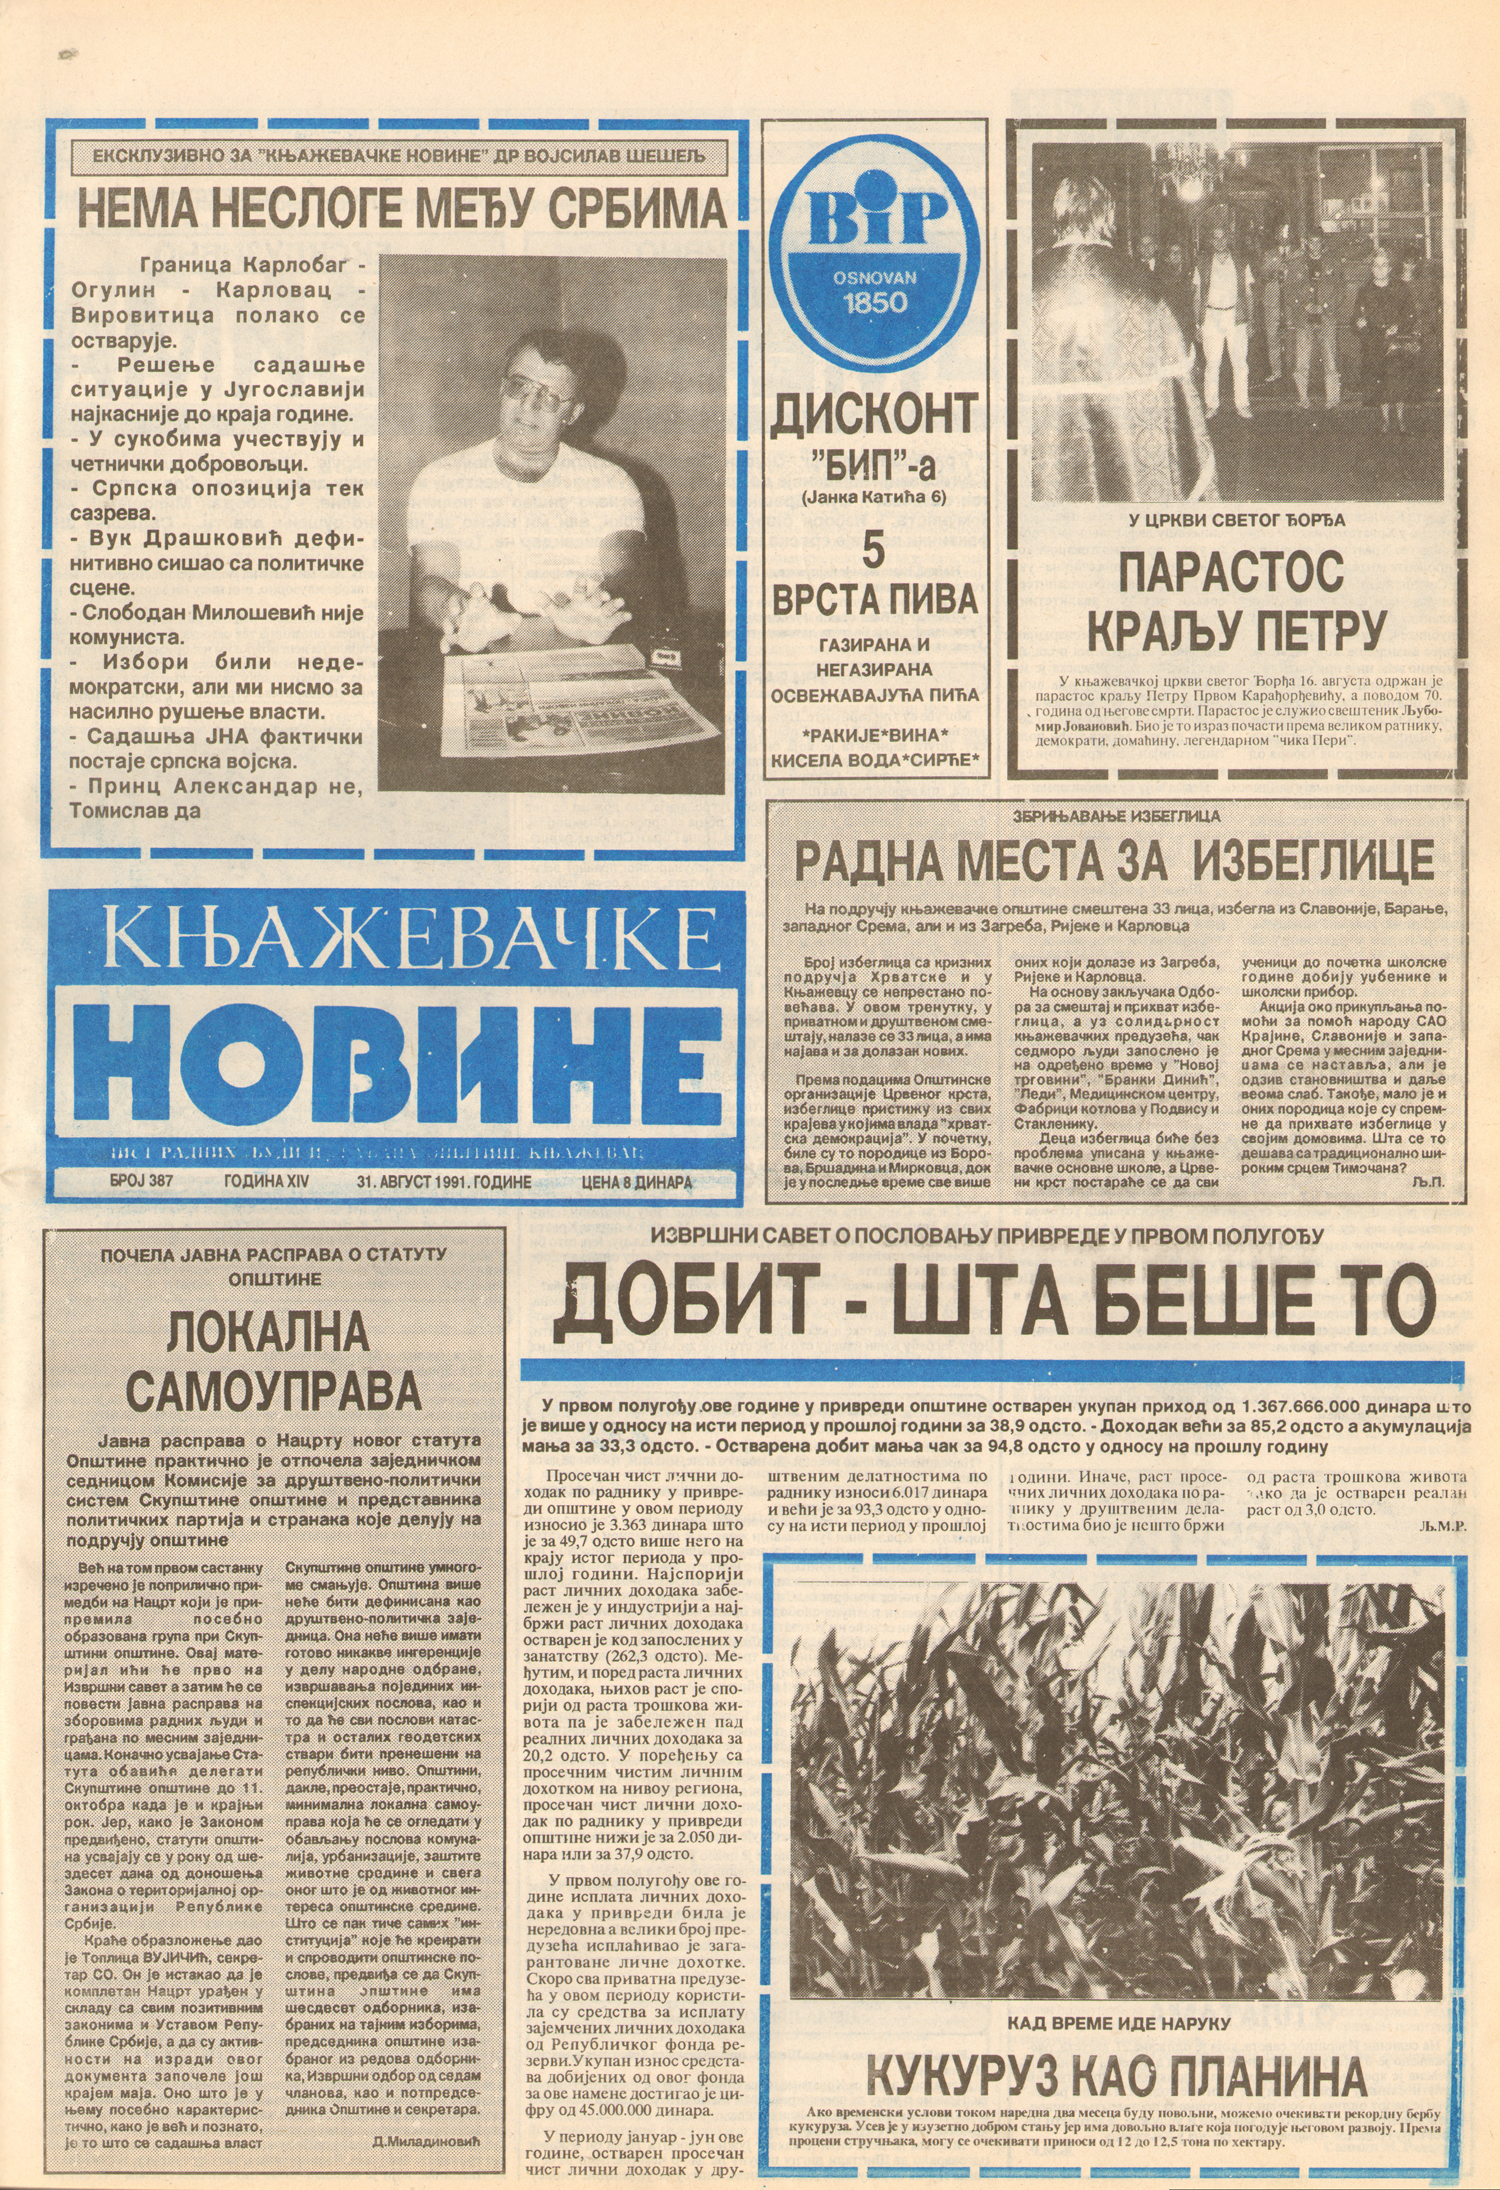 Књажевачке новине, број 387, година 1991